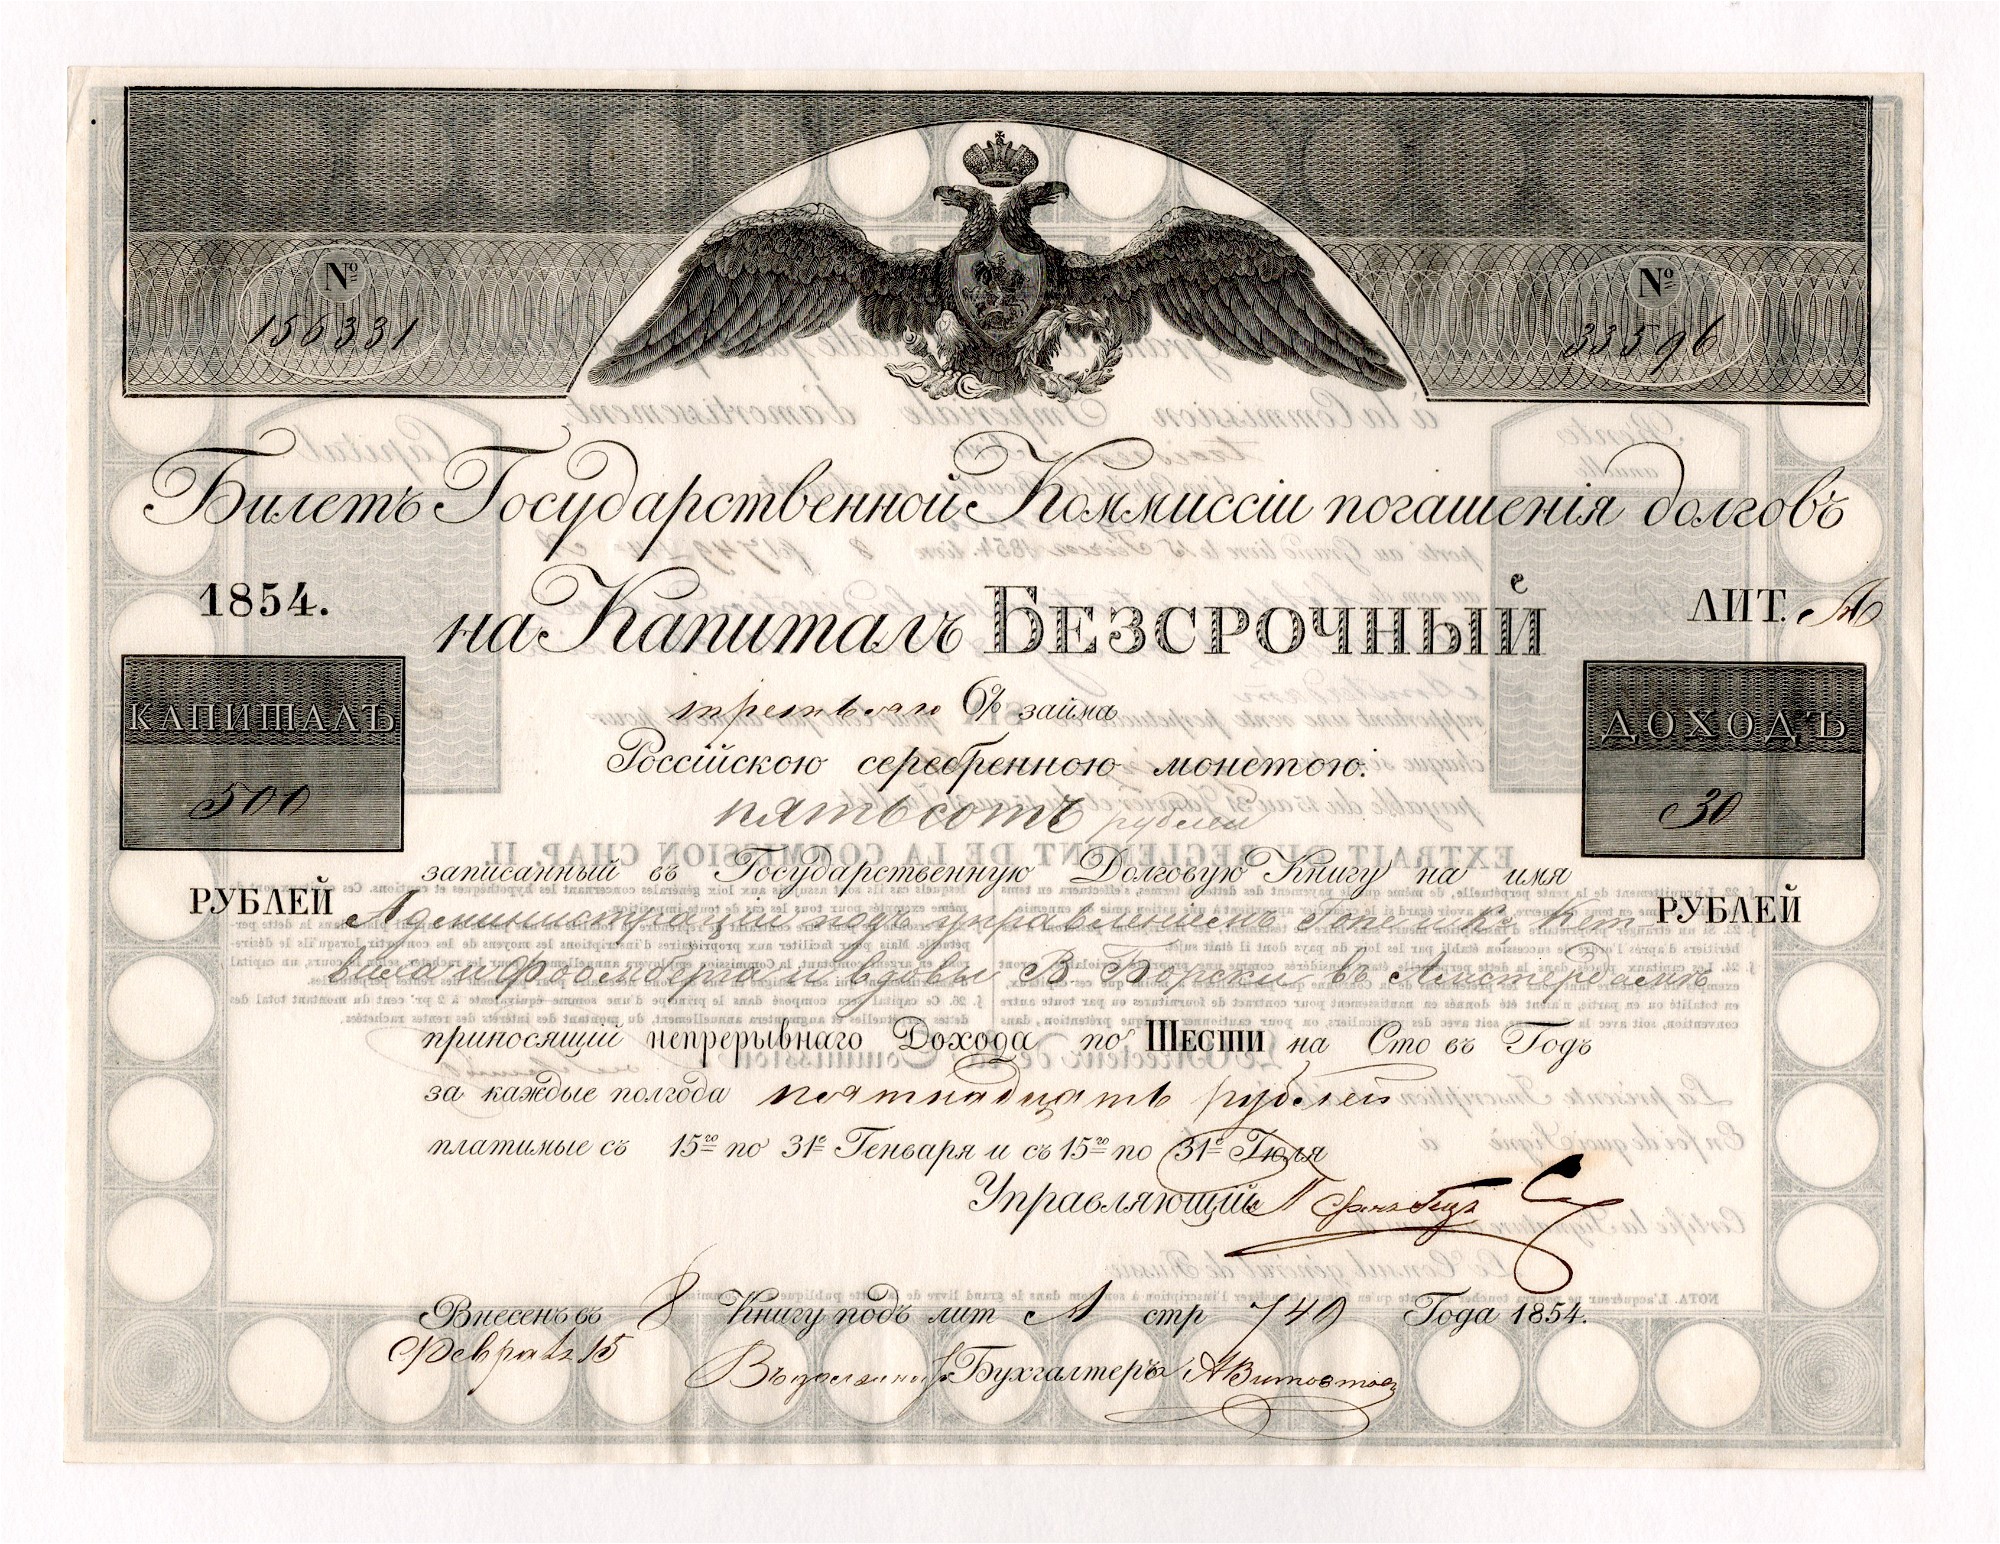 Комиссия 500 рублей. В 1862 году комиссия погашения долгов. Деньги в 1854 году. Облигации 4% займа комиссии погашения государственных долгов. Первые кредиты в России 1854.